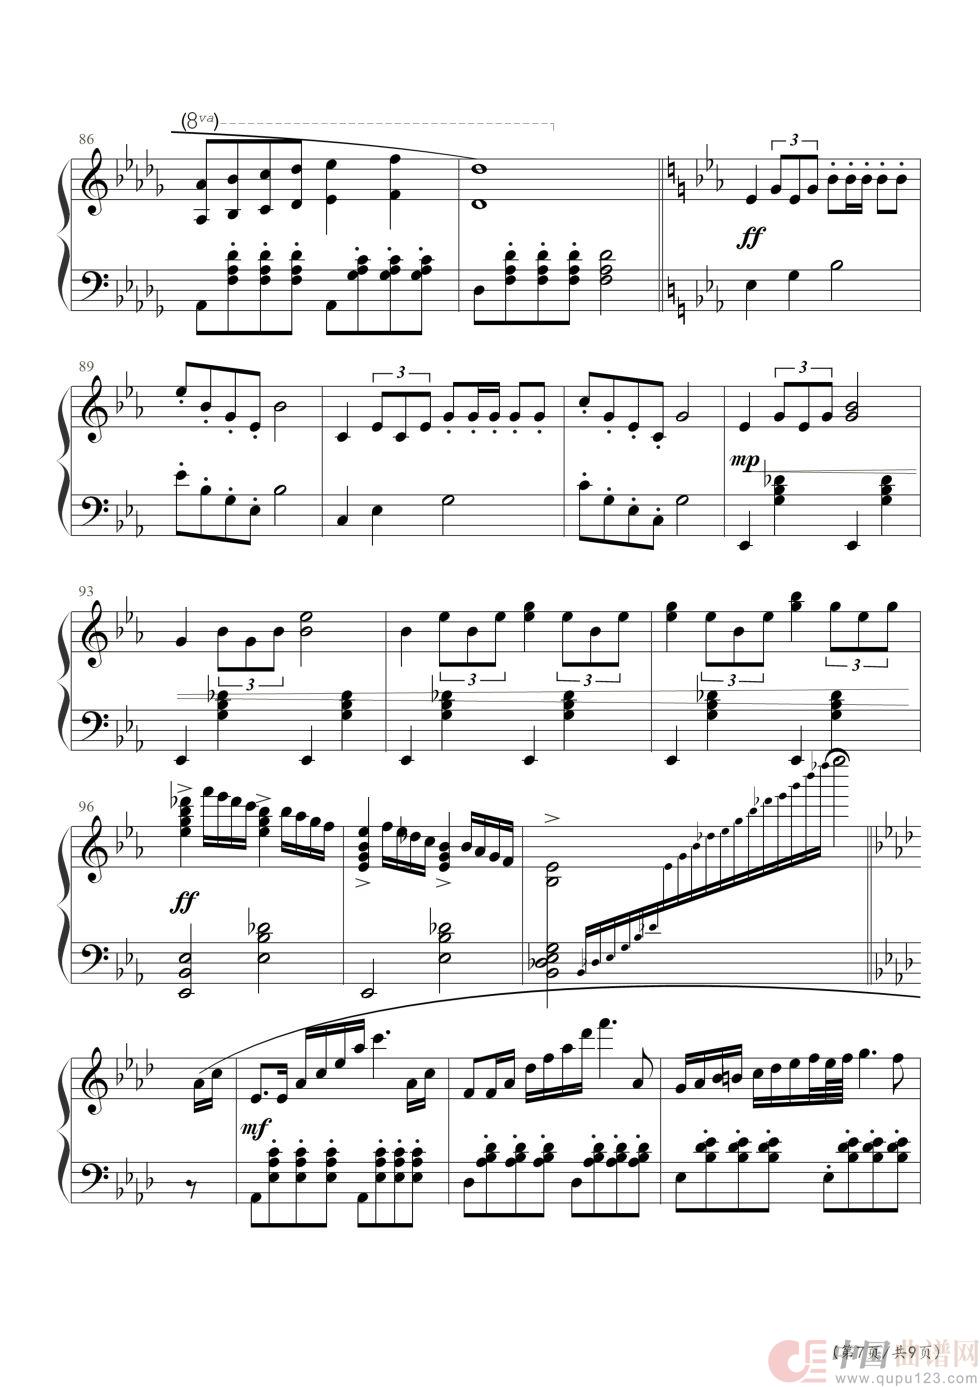 小马车夫（钢琴五线谱）(1)_原文件名：0007.jpg